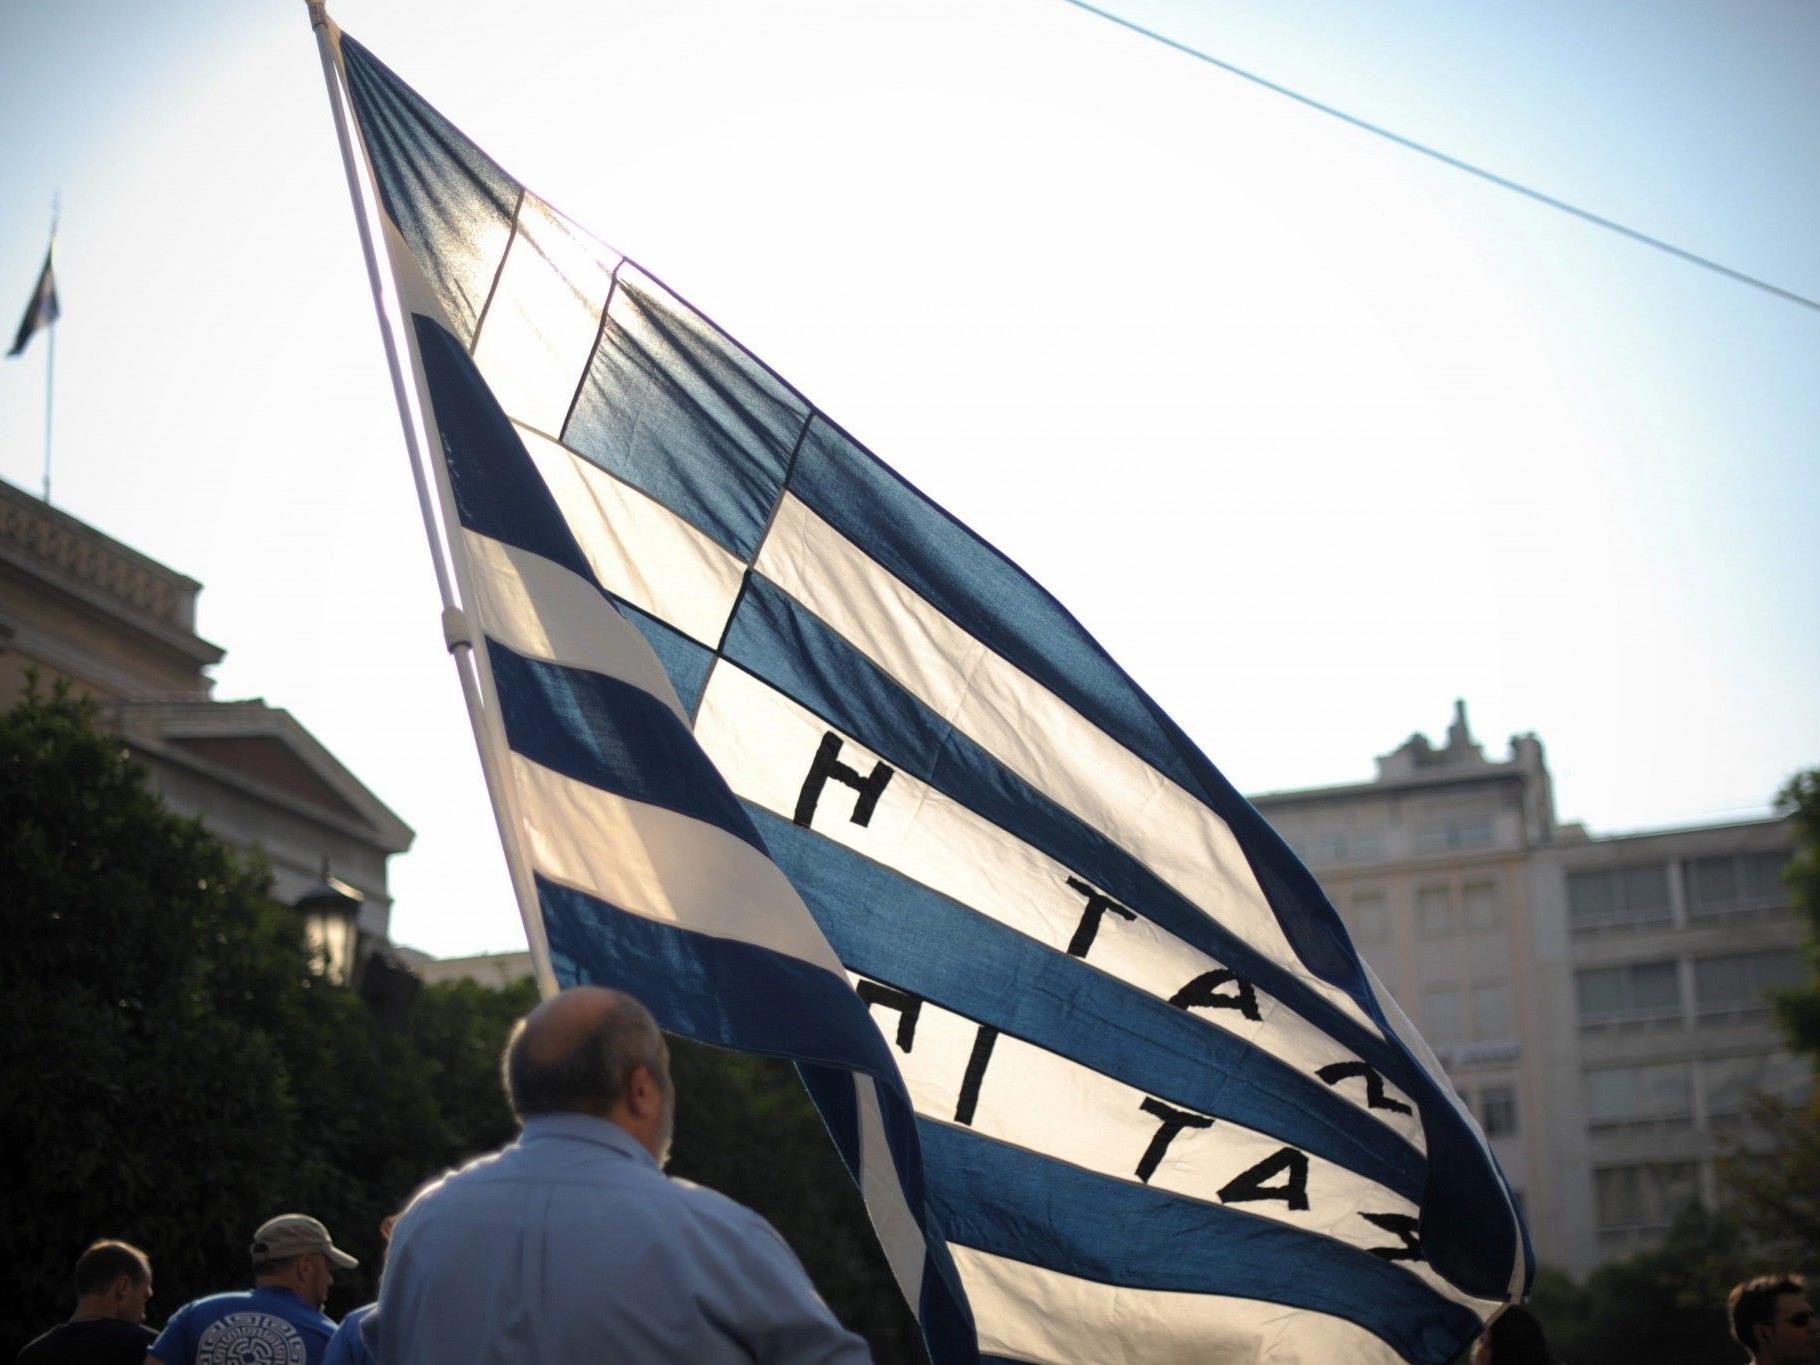 Griechenland ist laut Bericht mindestens zwei Jahre im Rückstand.